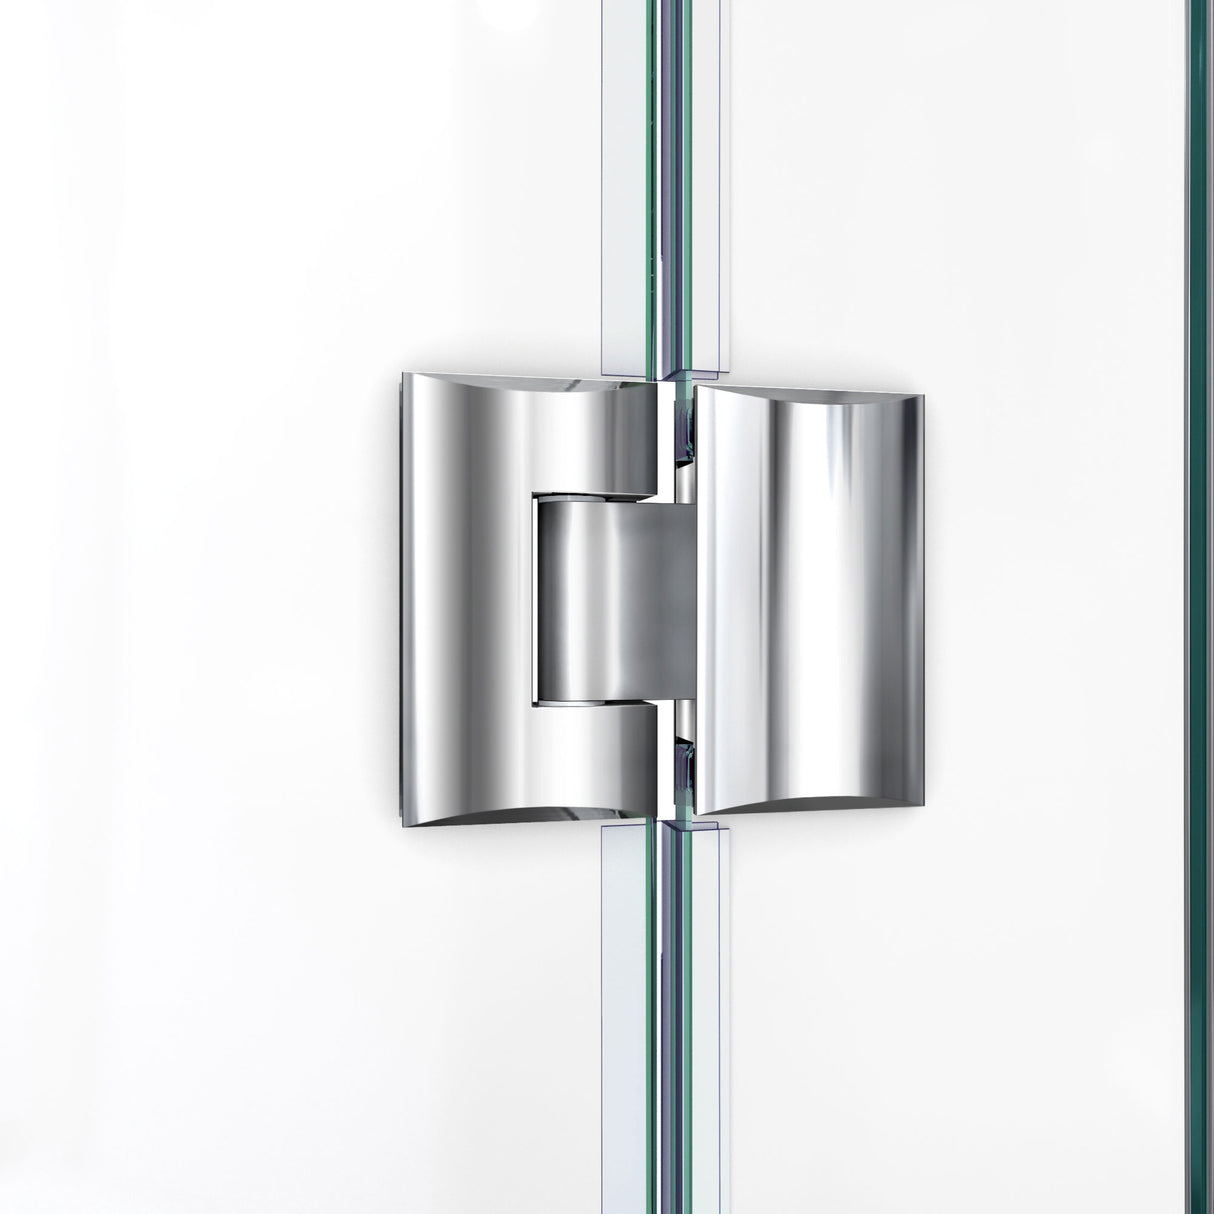 DreamLine Unidoor-X 54 in. W x 72 in. H Frameless Hinged Shower Door in Brushed Nickel